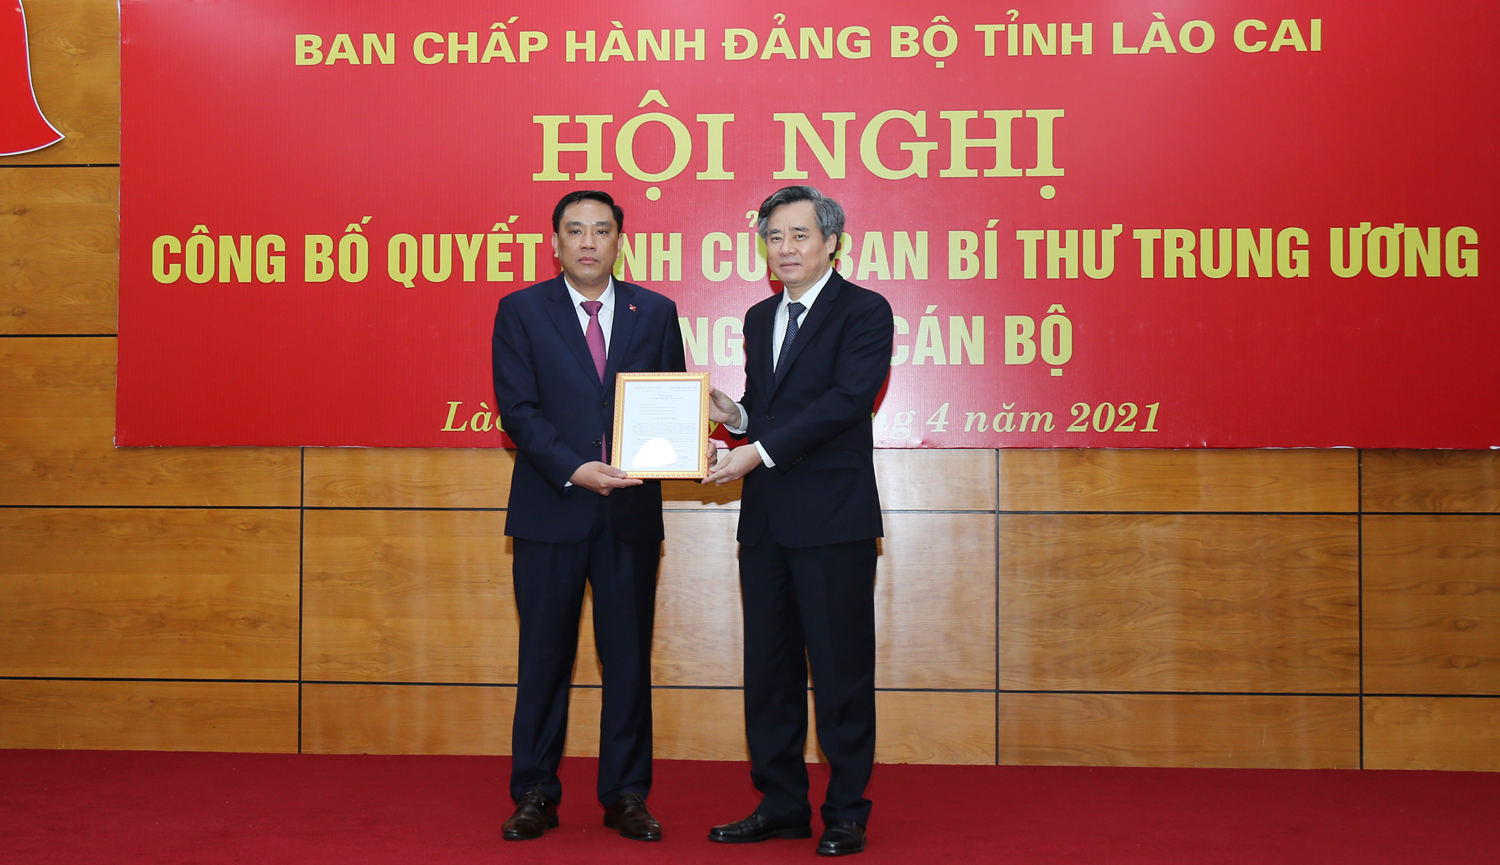 Phó trưởng Ban Tổ chức Trung ương Nguyễn Quang Dương trao Quyết định bổ nhiệm của Ban Bí thư Trung ương Đảng cho đồng chí Hoàng Giang. (Ảnh: LC)